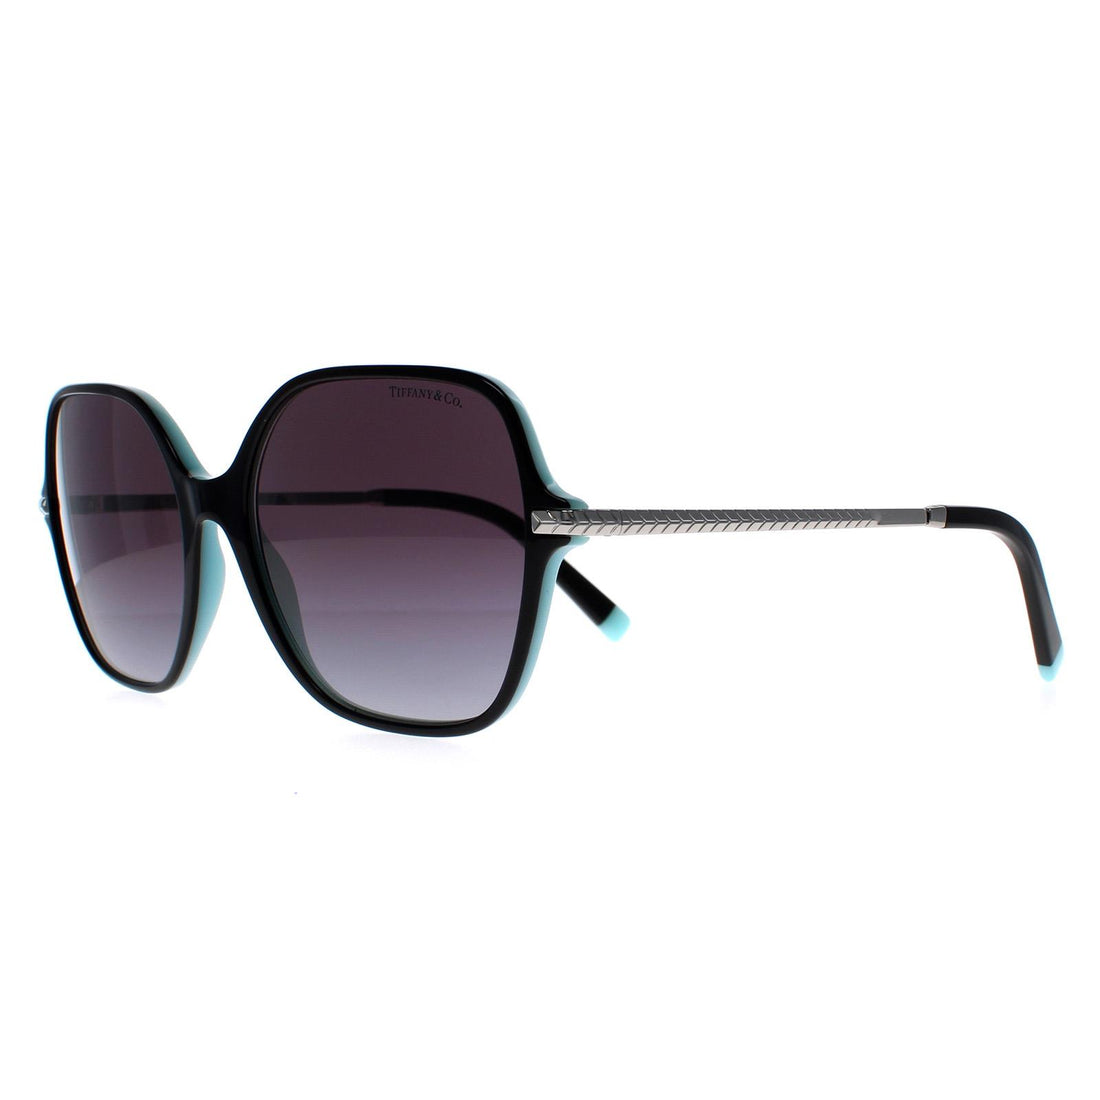 TIFFANY & CO. Tiffany T Aviator Sunglasses | Holt Renfrew